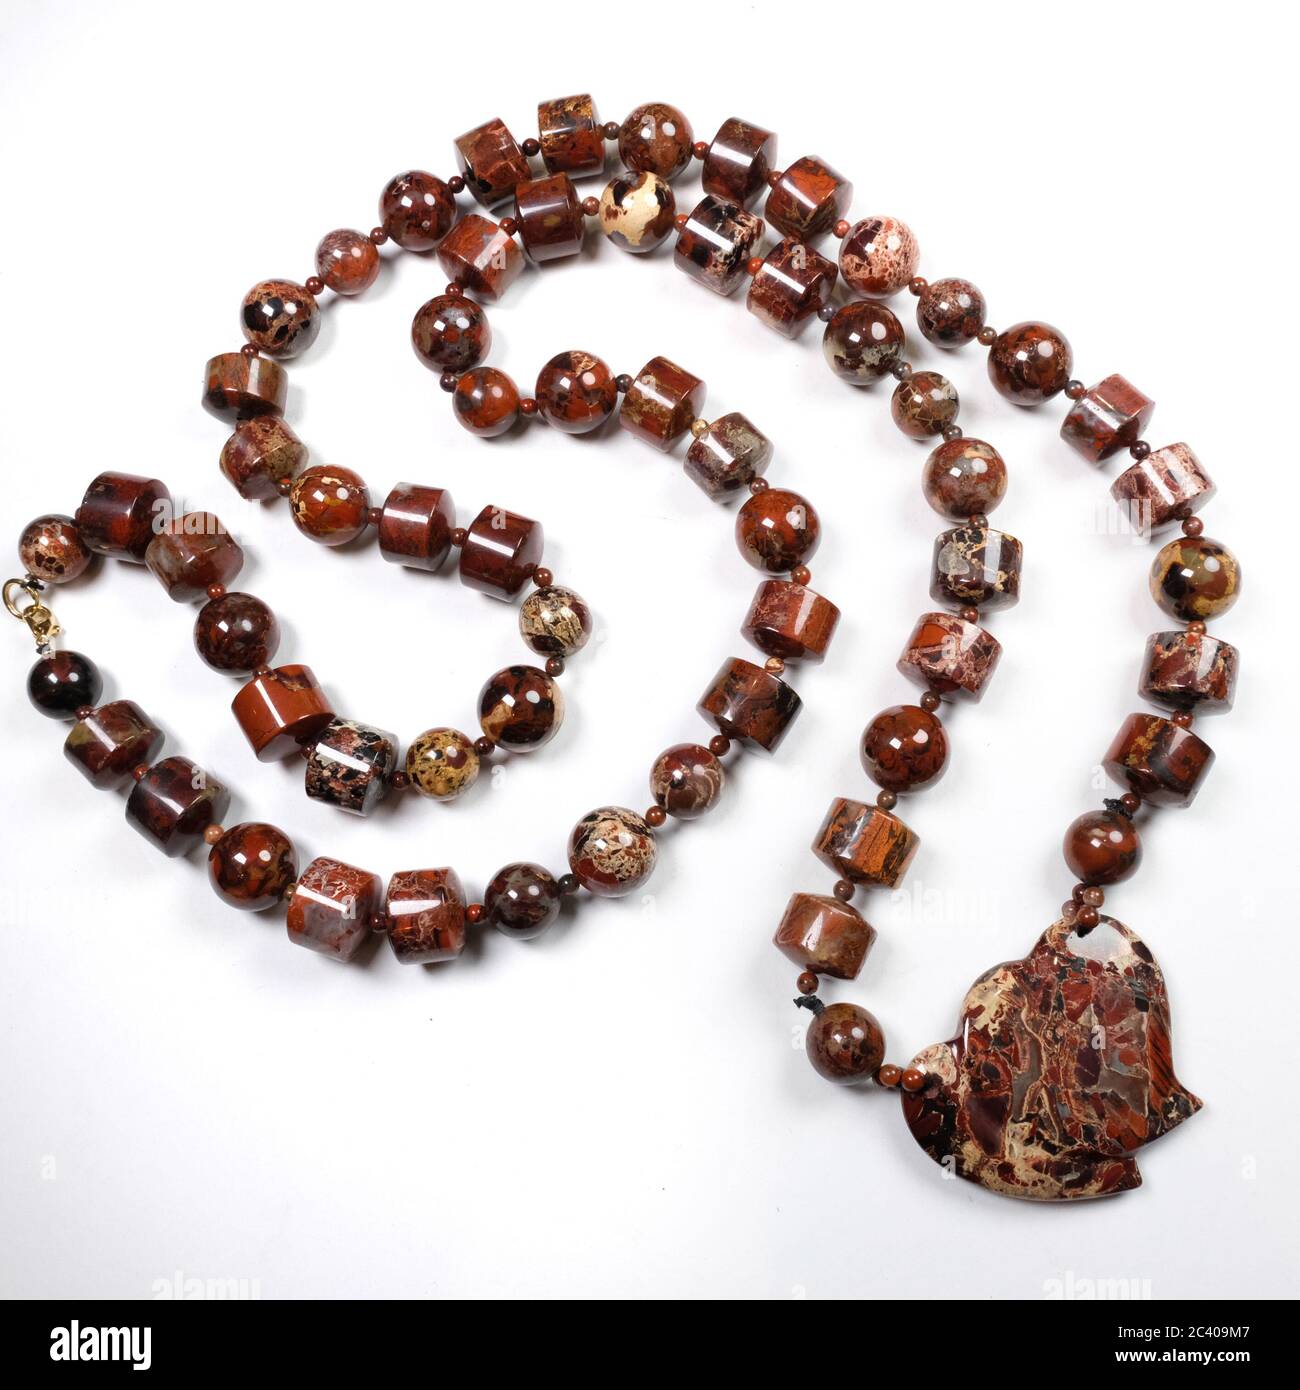 Cierre de un collar hecho a mano de piedras semi-preciosas - jaspe rojo Foto de stock